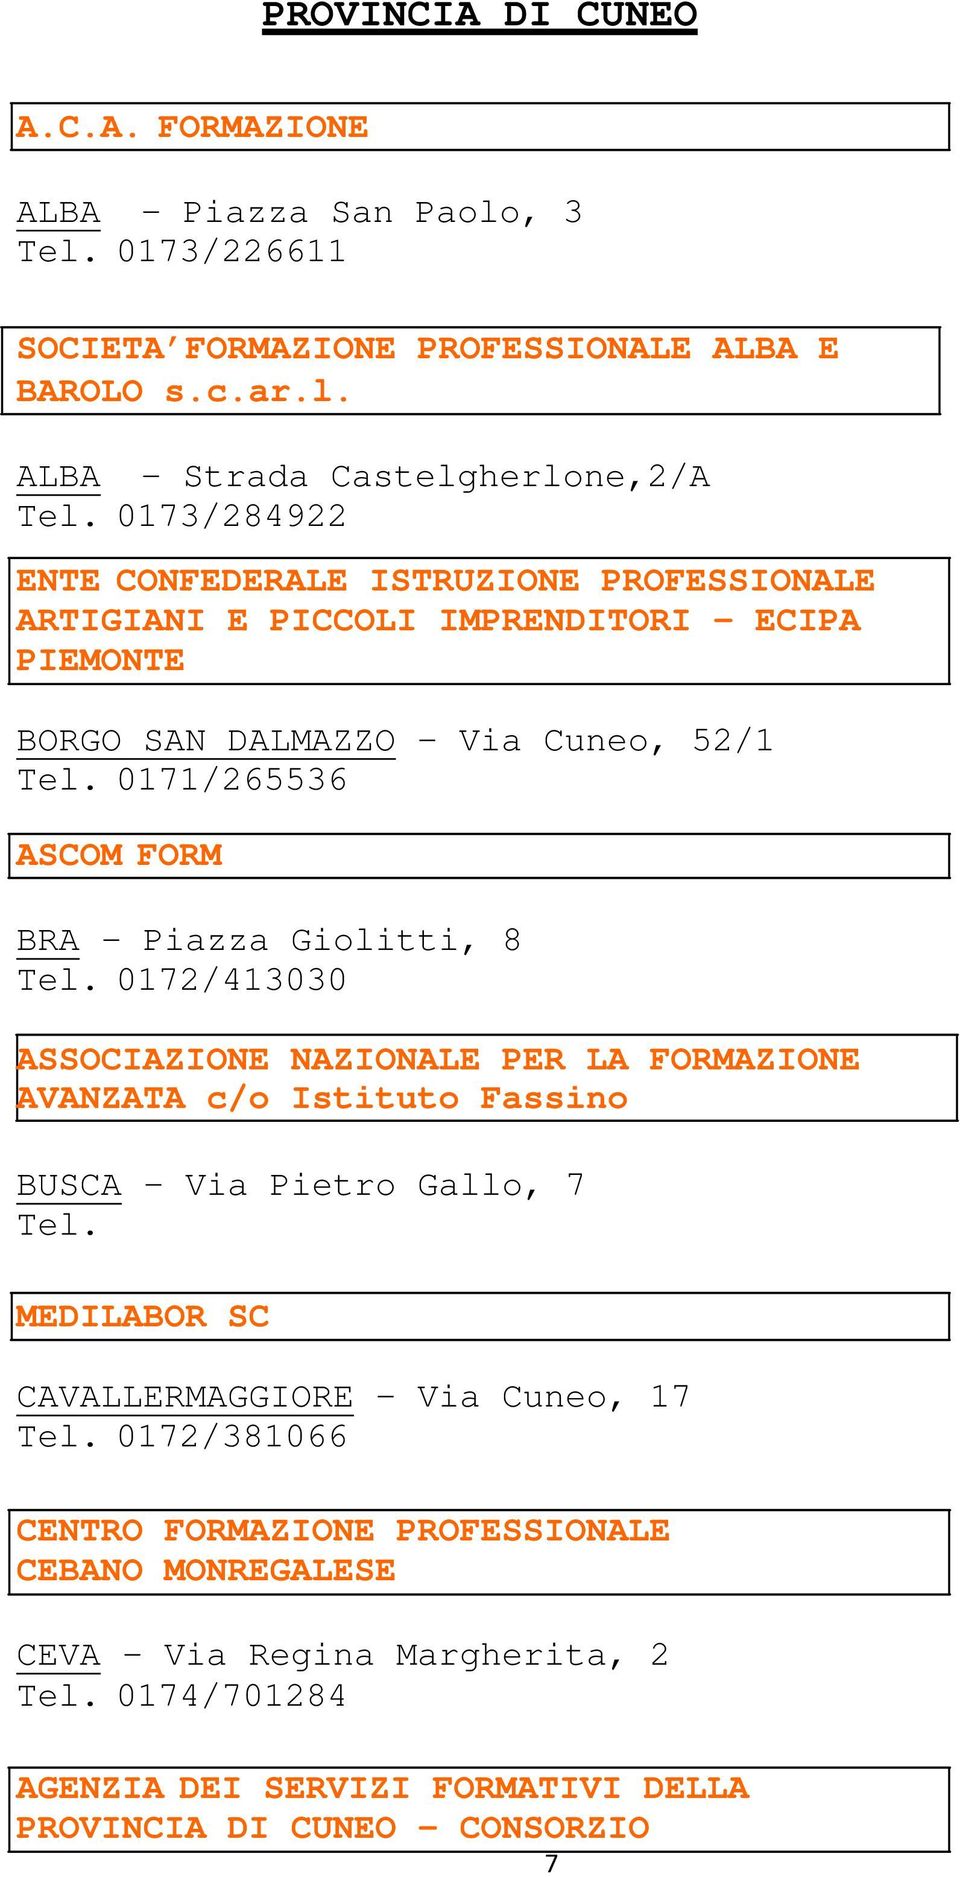 0171/265536 ASCOM FORM BRA - Piazza Giolitti, 8 Tel. 0172/413030 ASSOCIAZIONE NAZIONALE PER LA FORMAZIONE AVANZATA c/o Istituto Fassino BUSCA Via Pietro Gallo, 7 Tel.